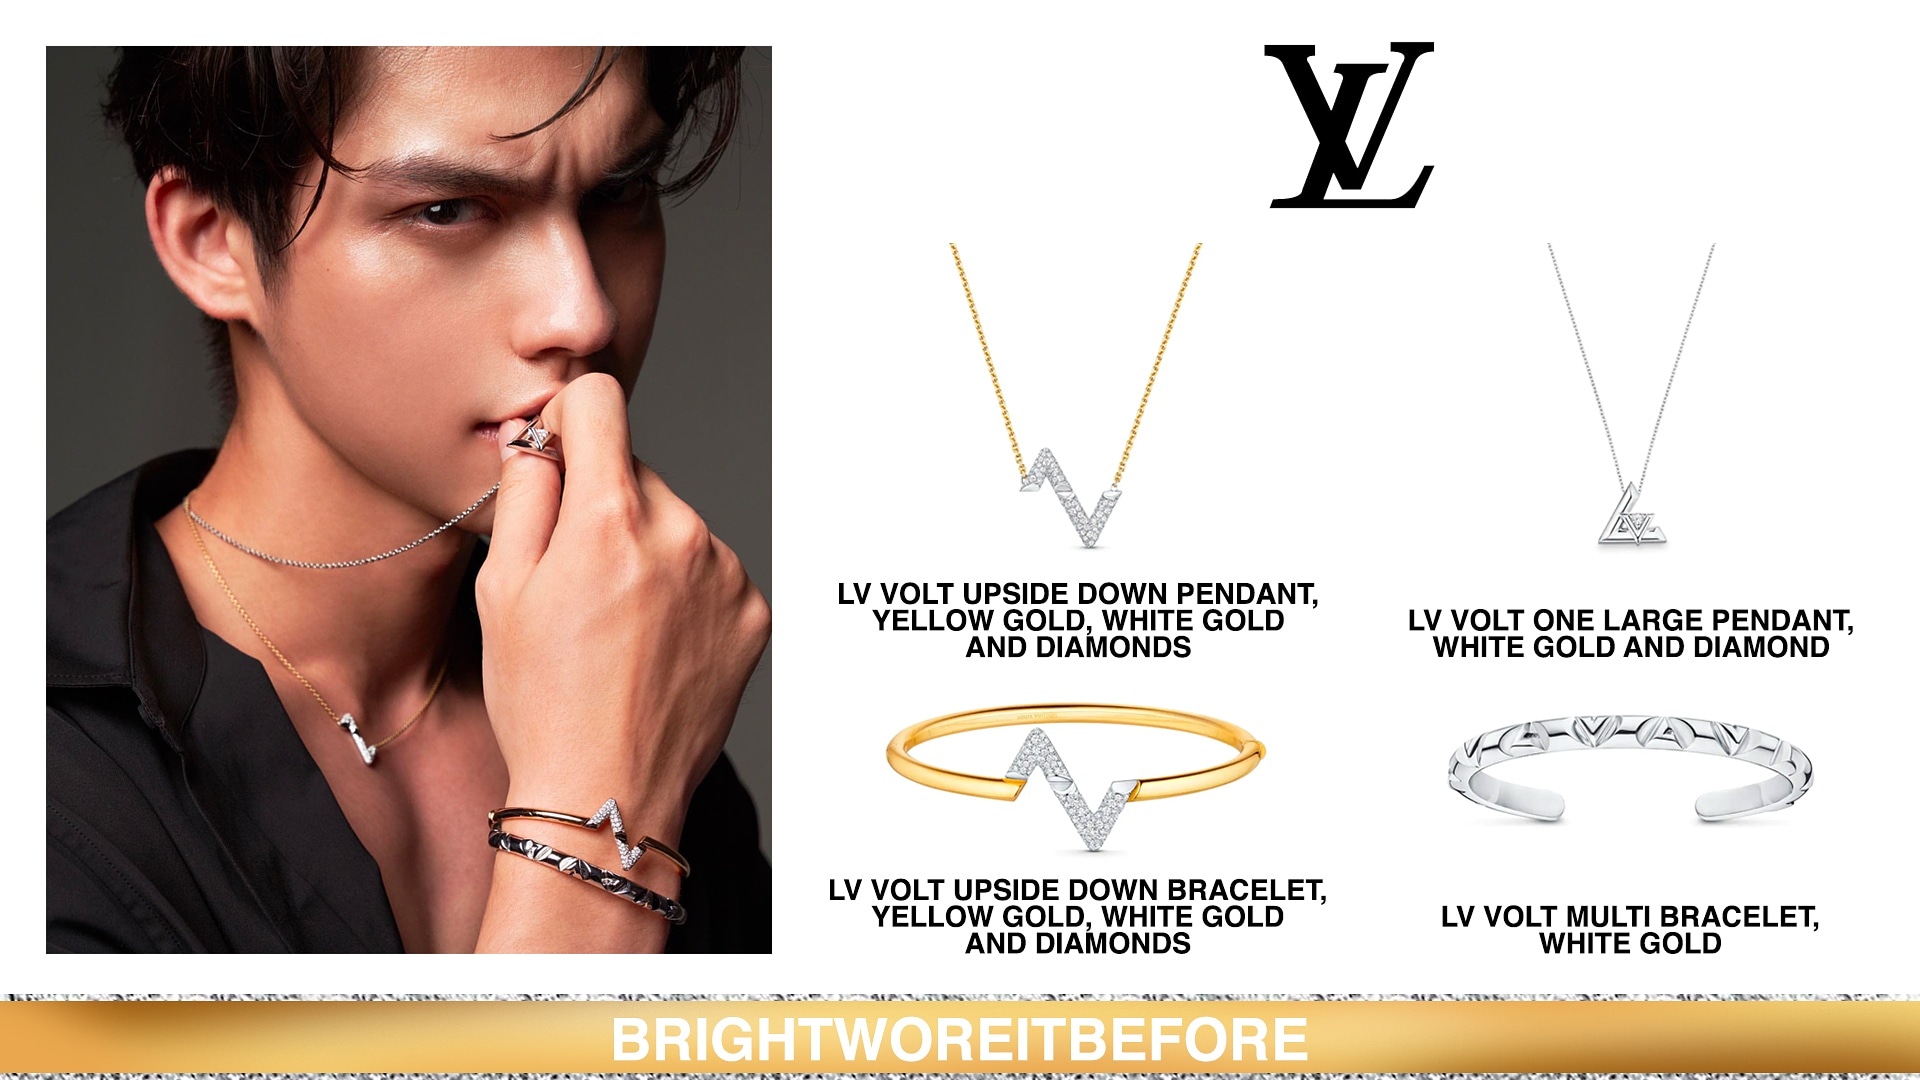 LV Volt Multi Bracelet, White Gold - Categories